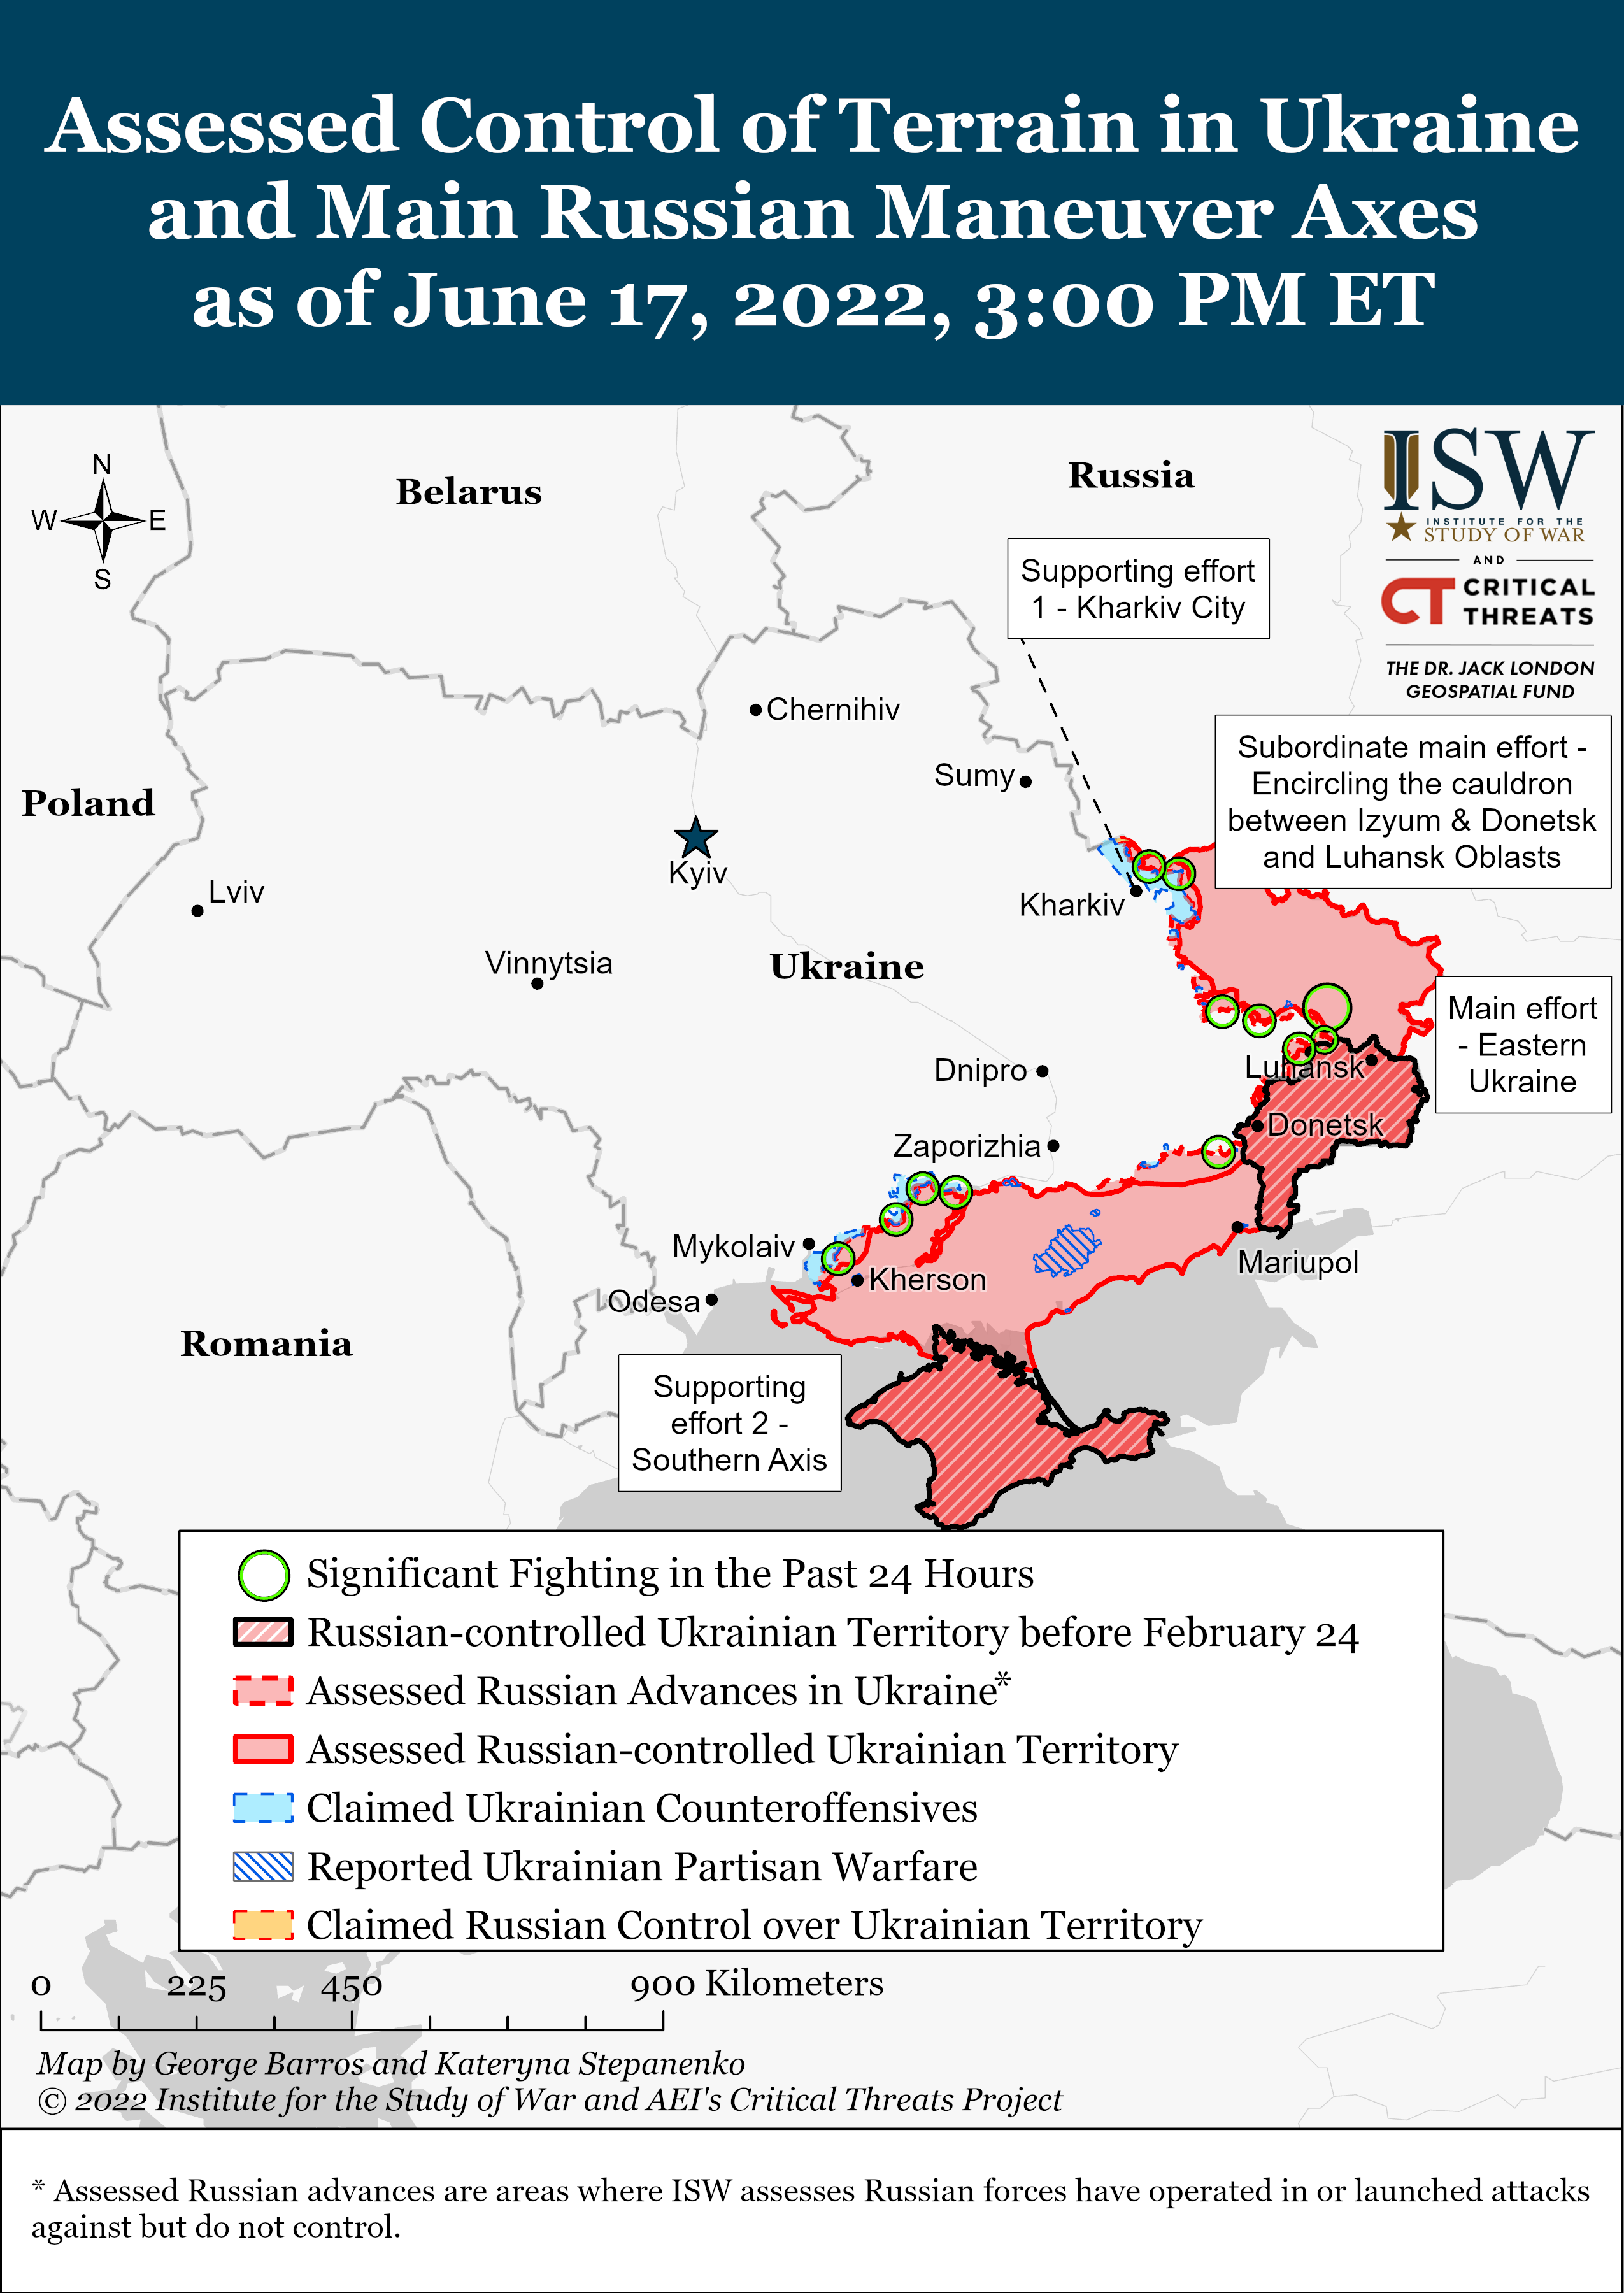 Wie ist der aktuelle Stand (17.06.22) der russischen Truppen in der Ukraine?